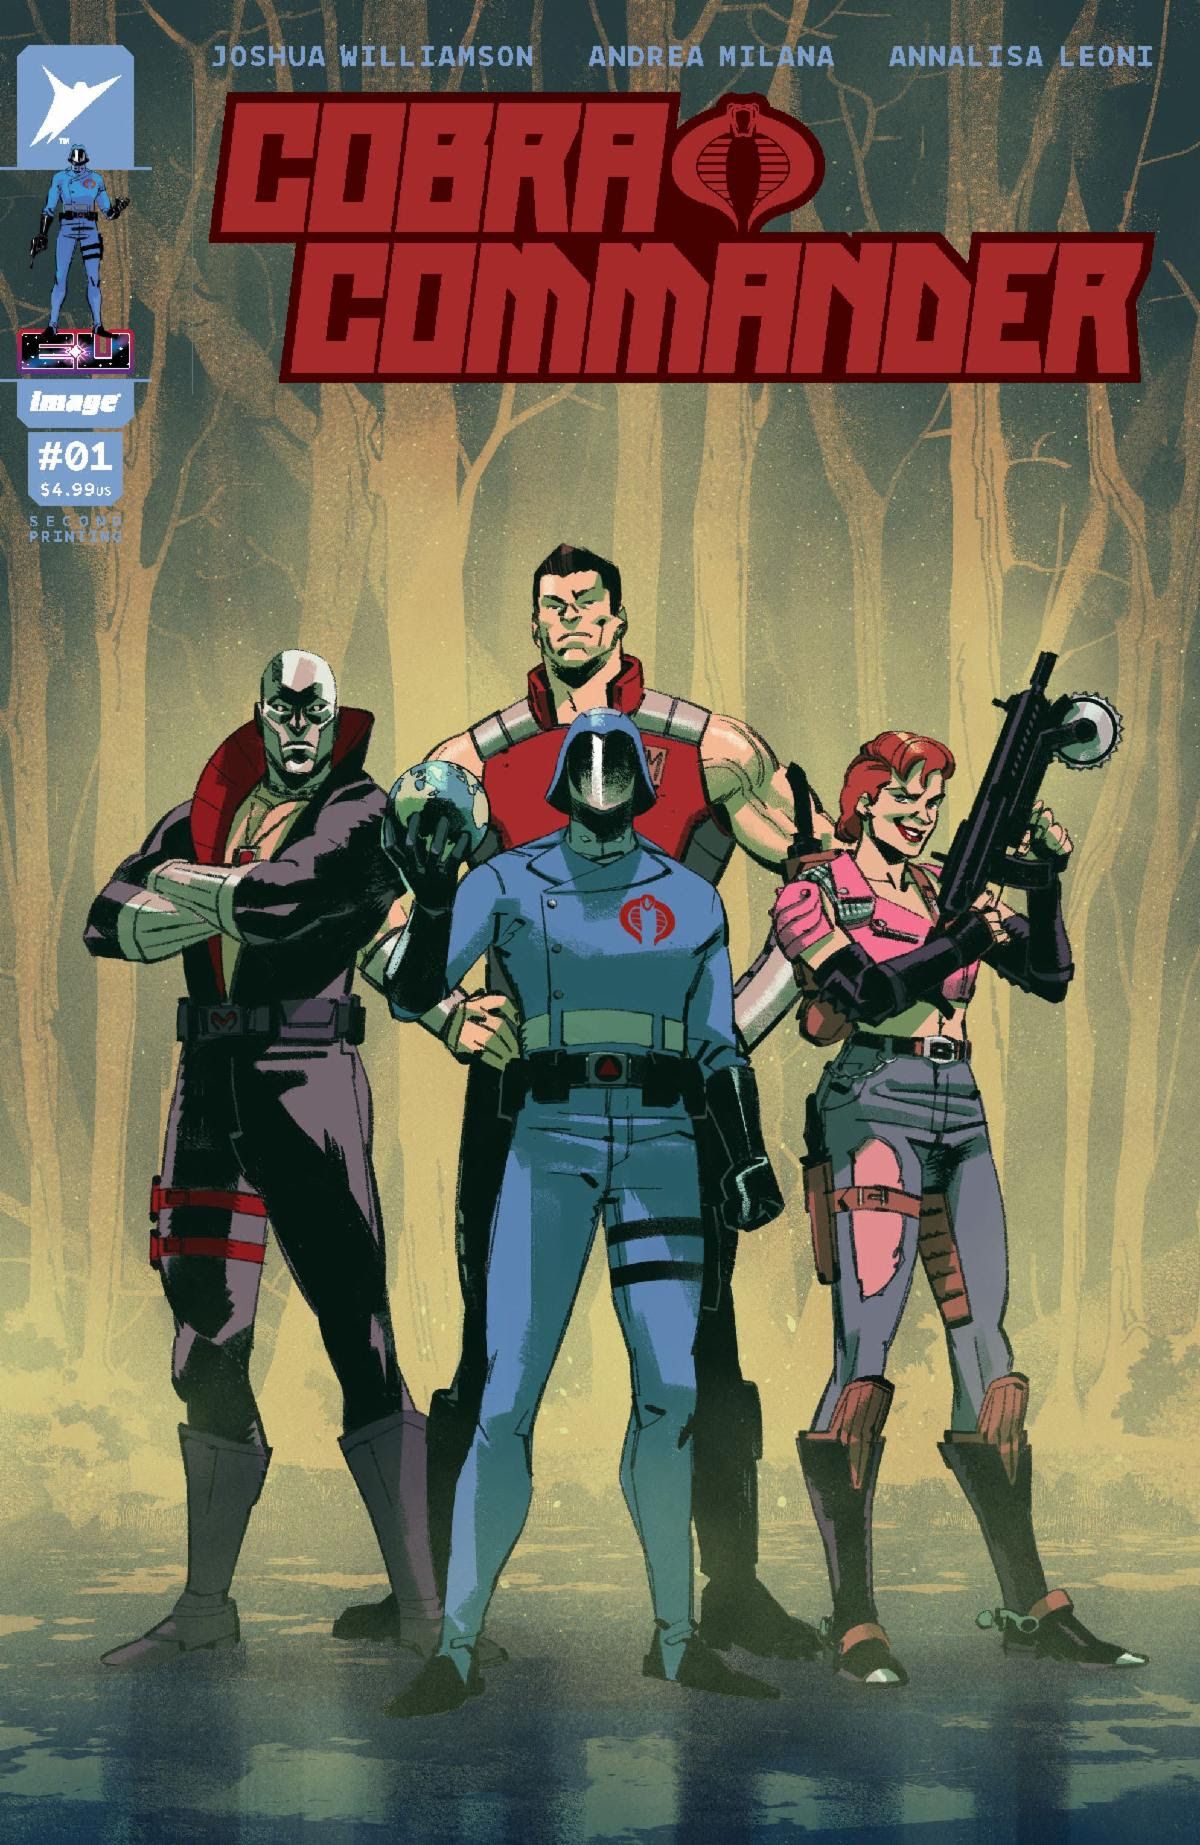 Outra variante da segunda capa impressa do Cobra Commander #1